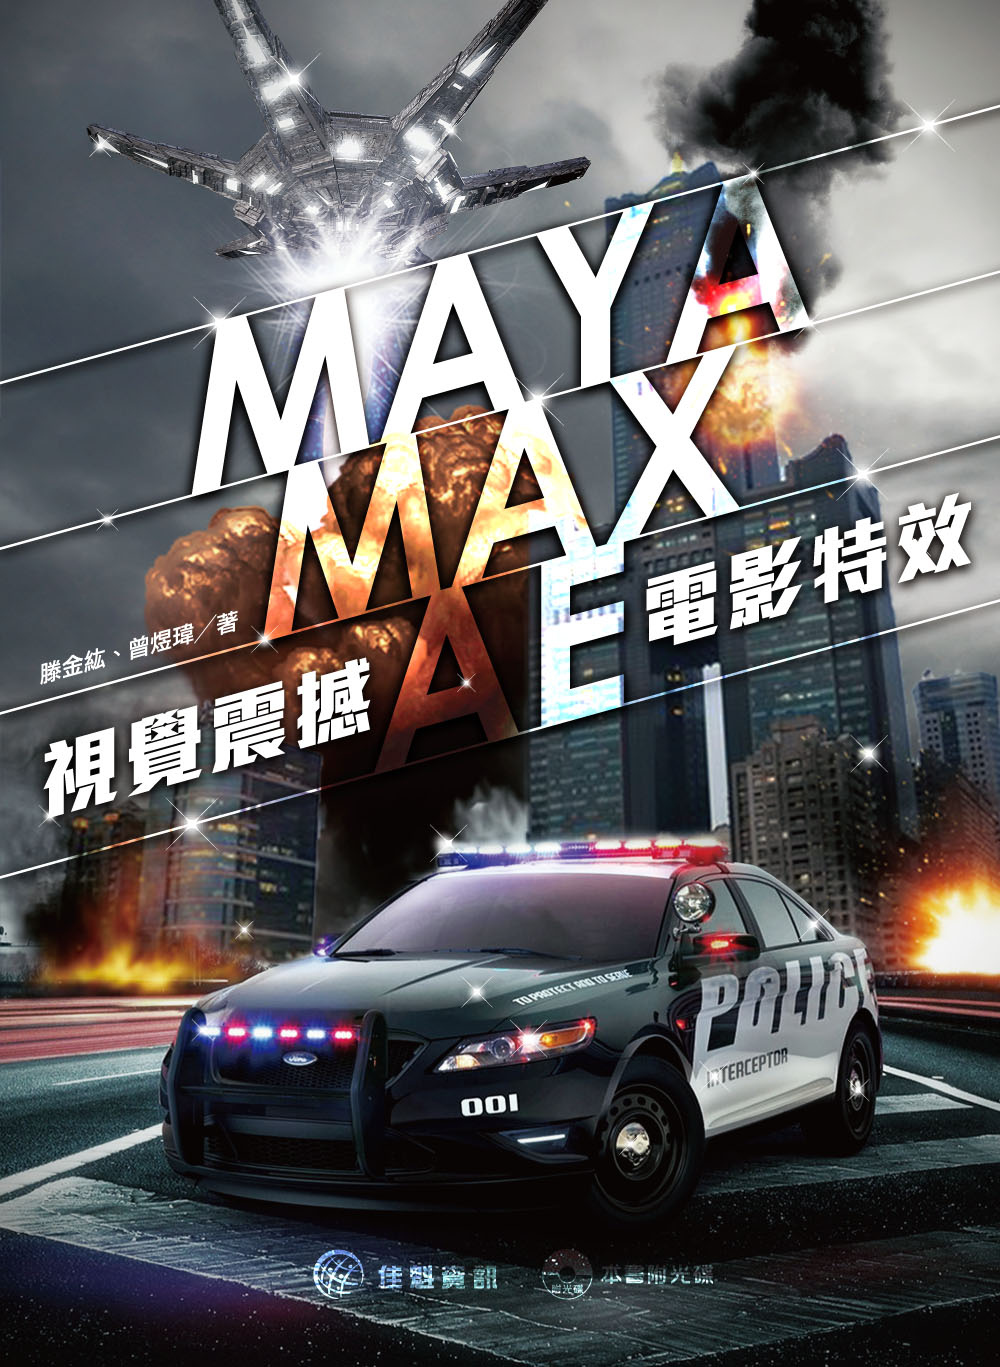 MAYA/MAX/AE 視覺震撼 X 電影特效